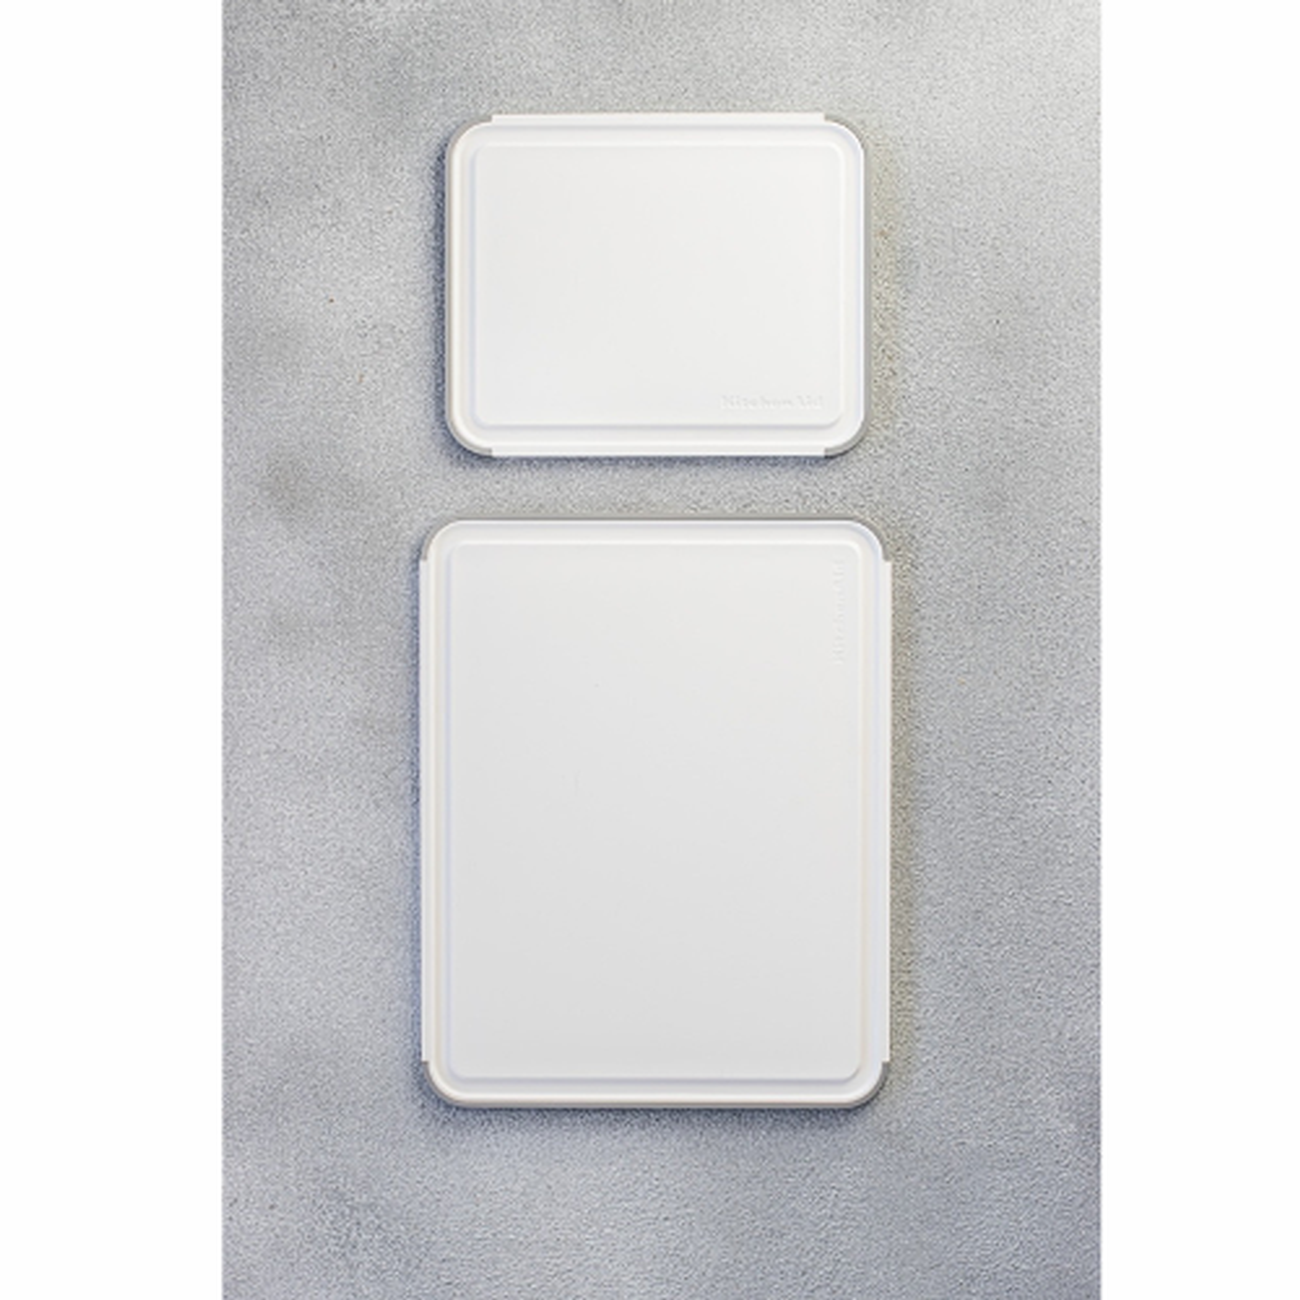 KitchenAid Classic Nonslip 2 Piece Plastic Cutting Board, White